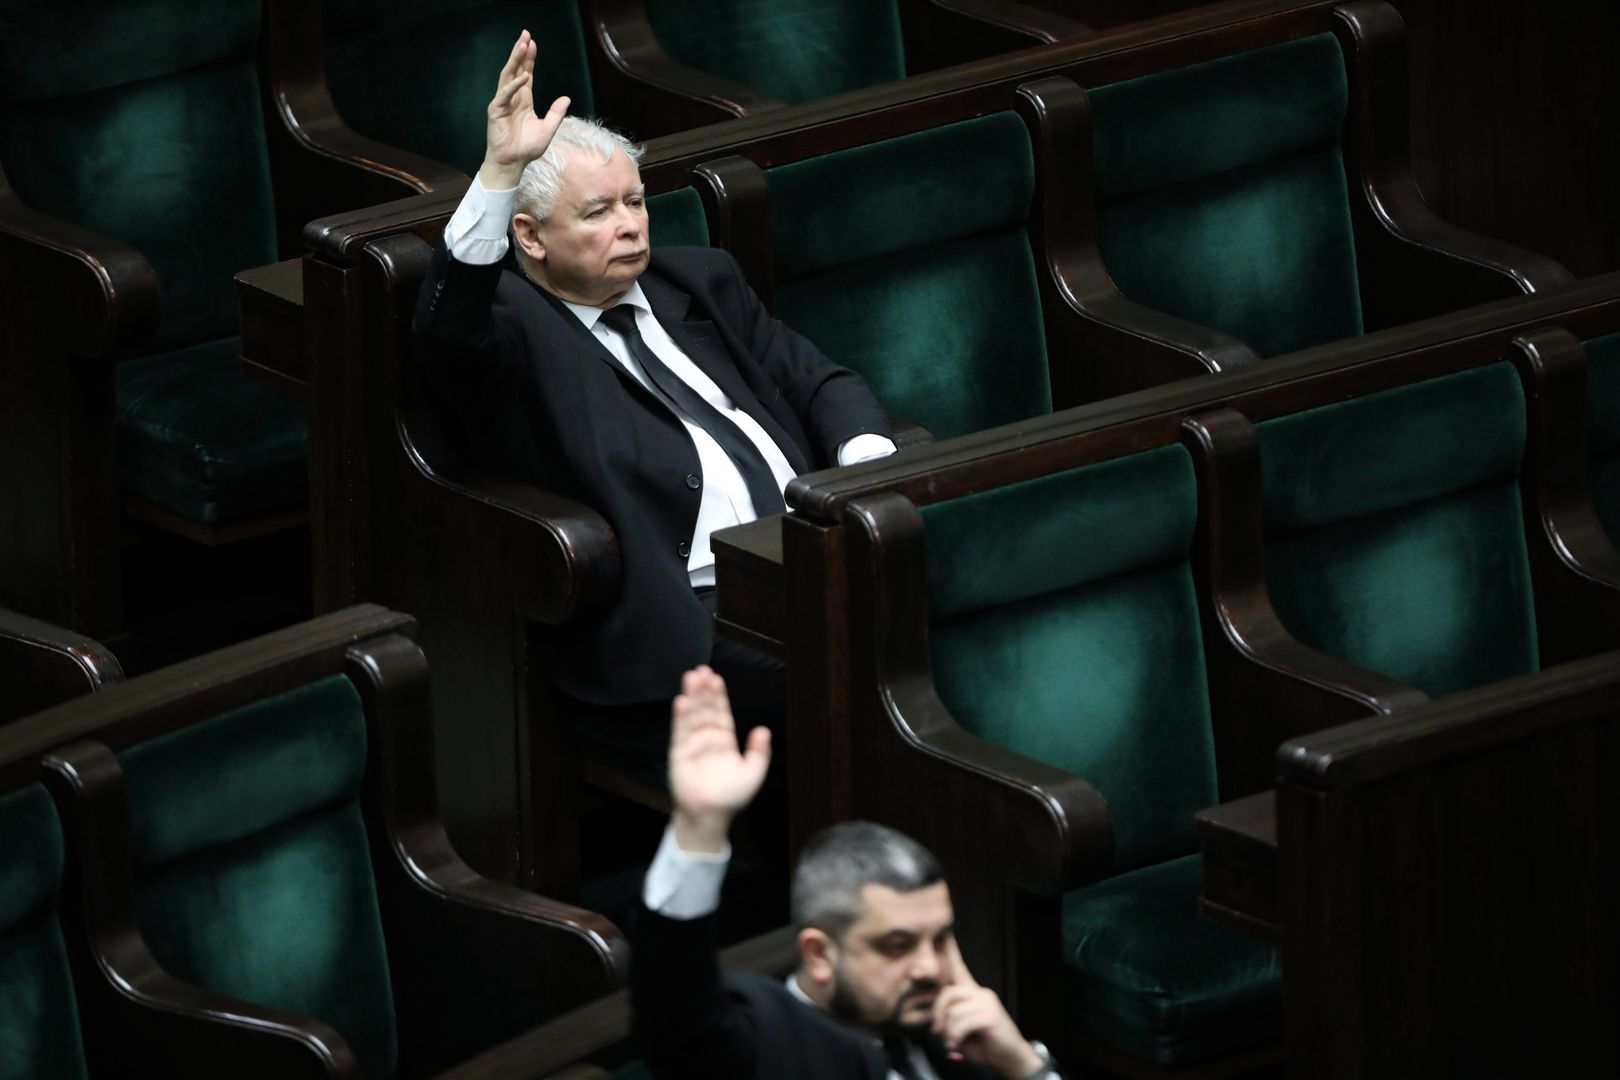 Ustawa o głosowaniu korespondencyjnym została uchwalona przez Sejm